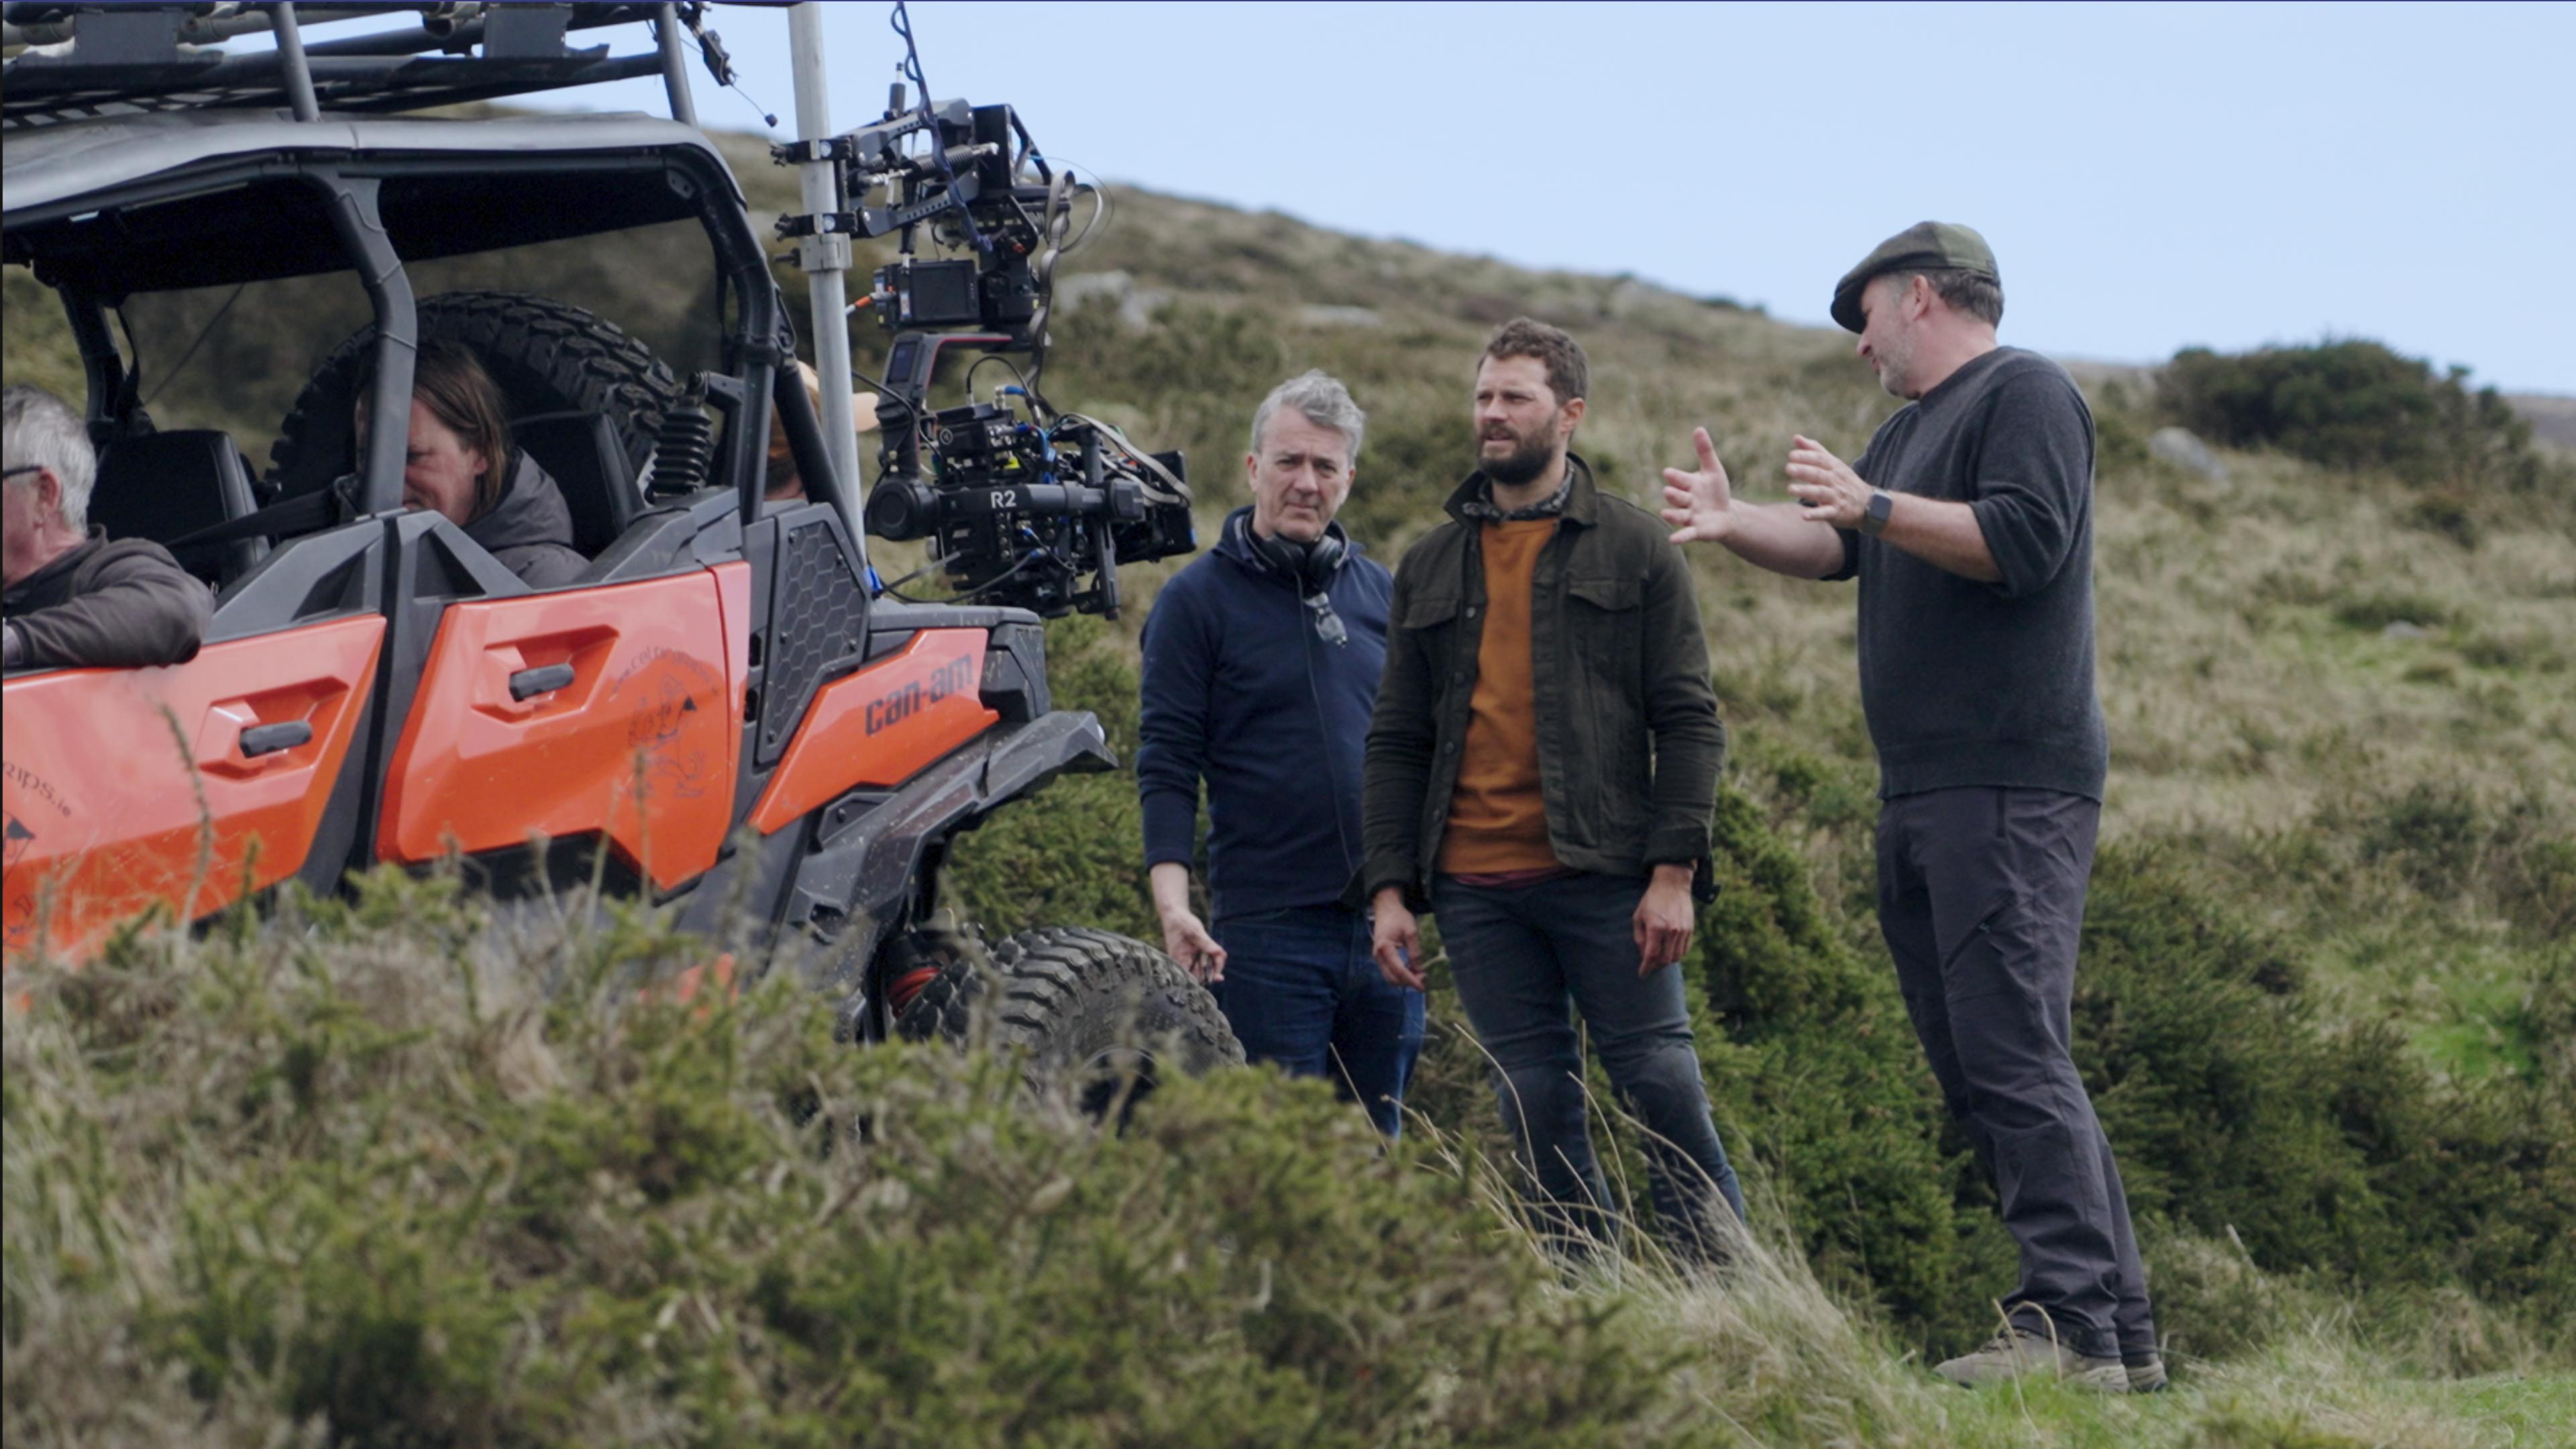 "The Tourist - Irisches Blut: Making-of, Teil 1": Jamie Dornan steht mit zwei Männern hinter einem roten Strandbuggy in einer hügeligen Dünenlandschaft. Auf dem Buggy ist eine Kamera montiert.